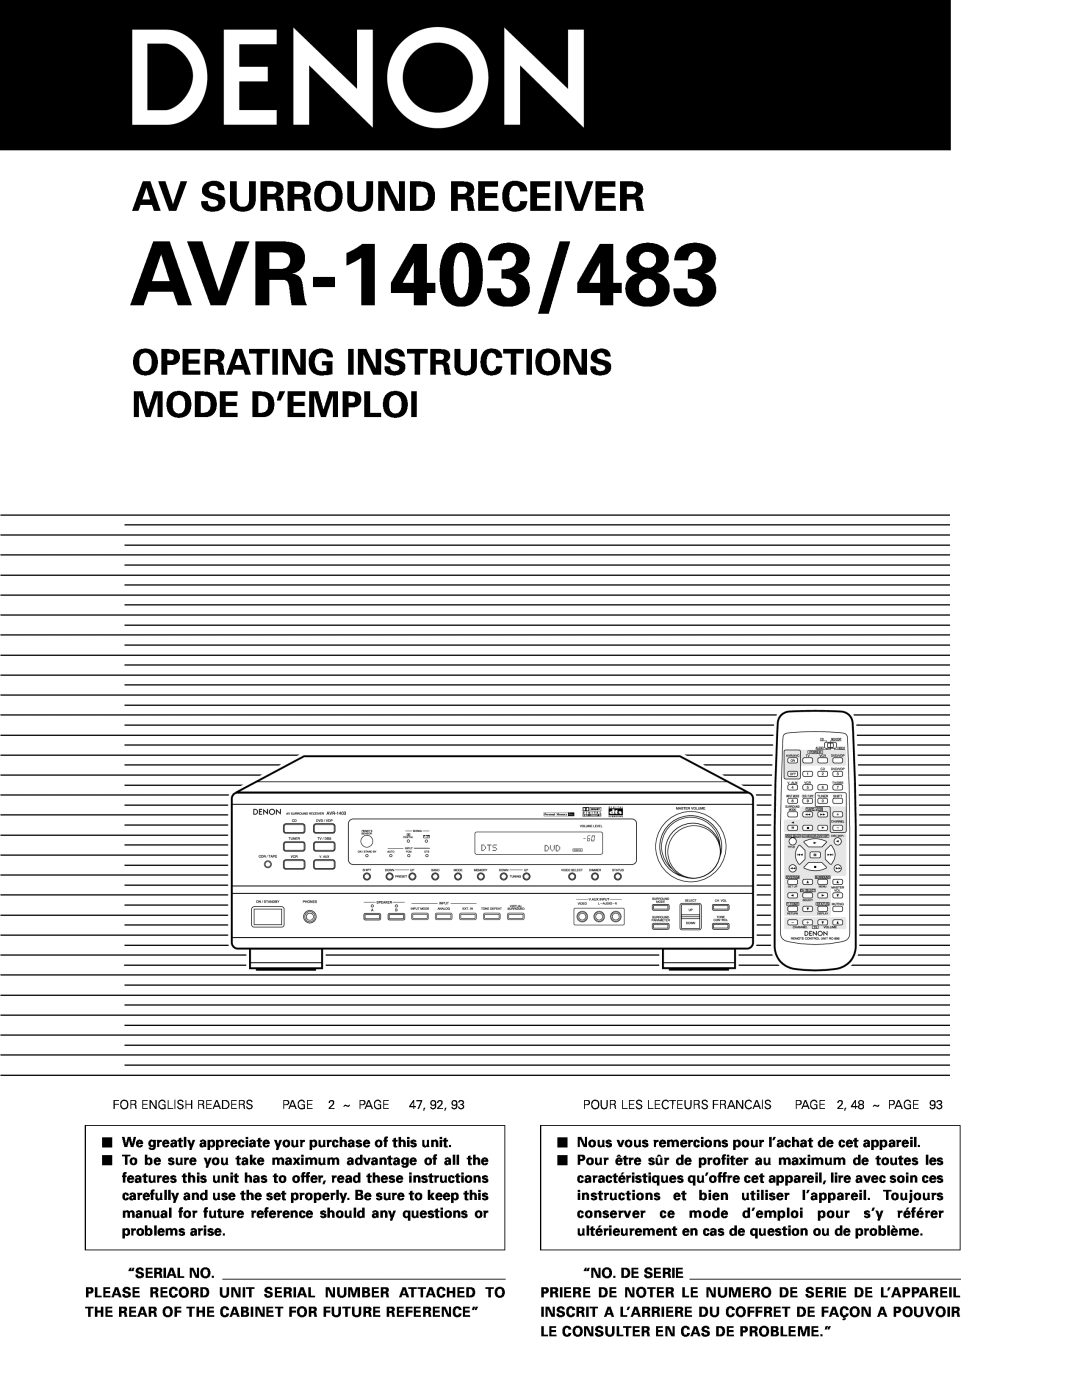 Denon manual Operating Instructions Mode D’Emploi, AVR-1403/483, Av Surround Receiver, “Serial No, “No. De Serie 